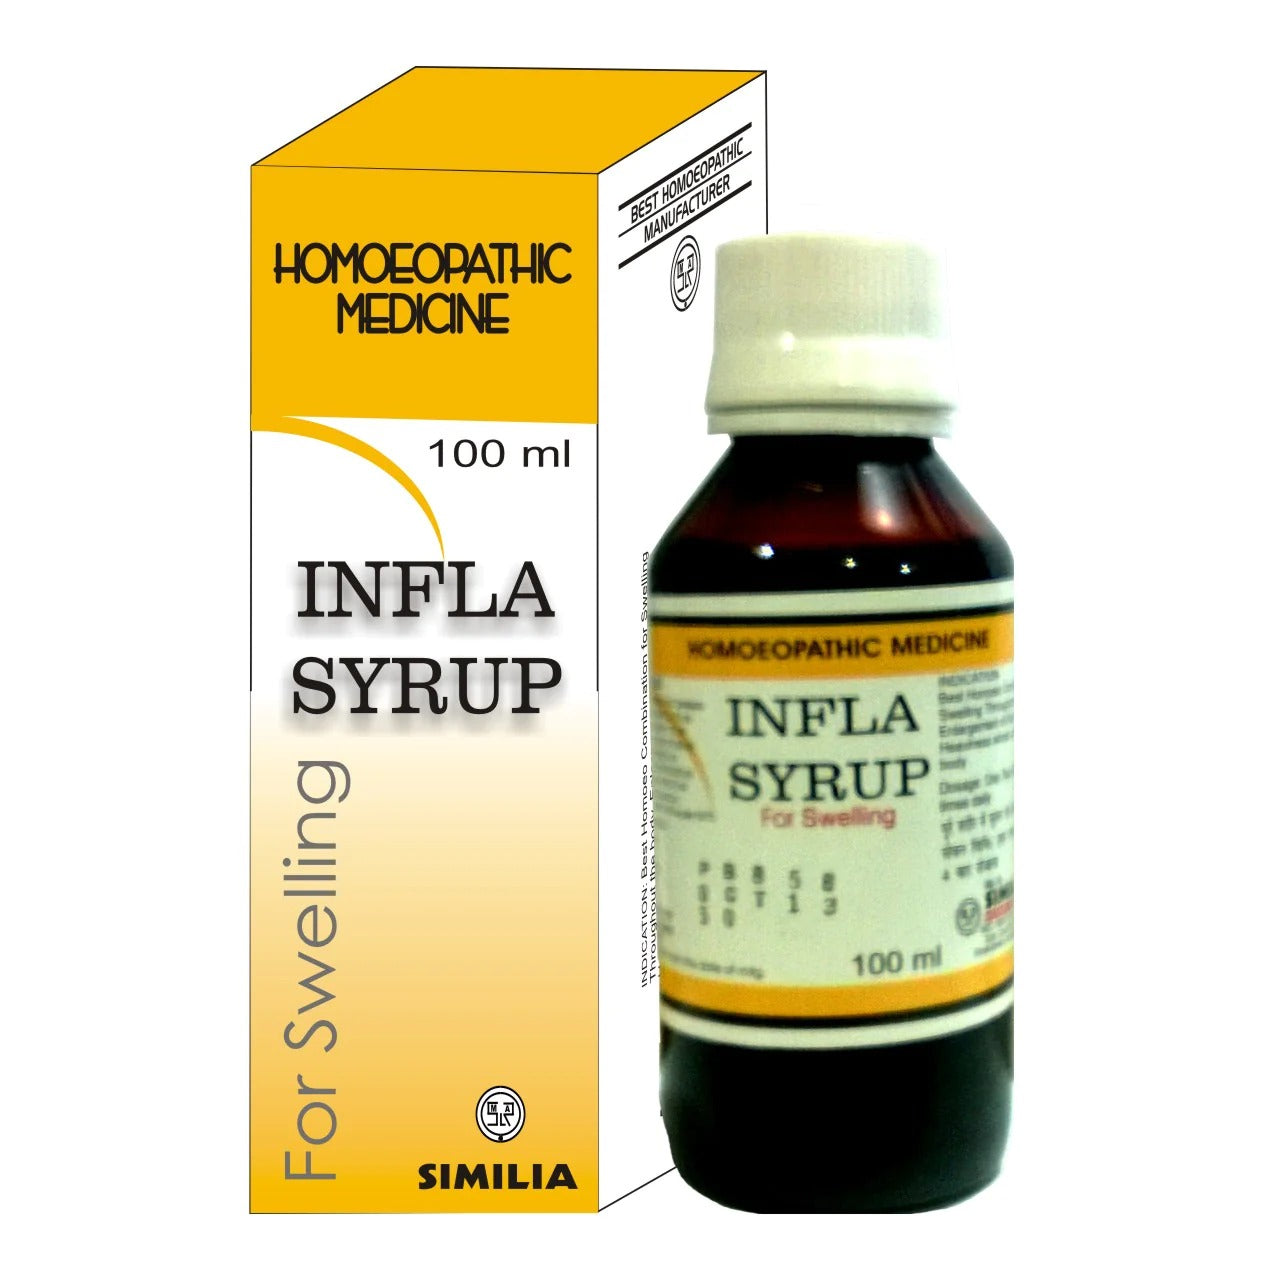 Similia Infla Syrup (225 ml)